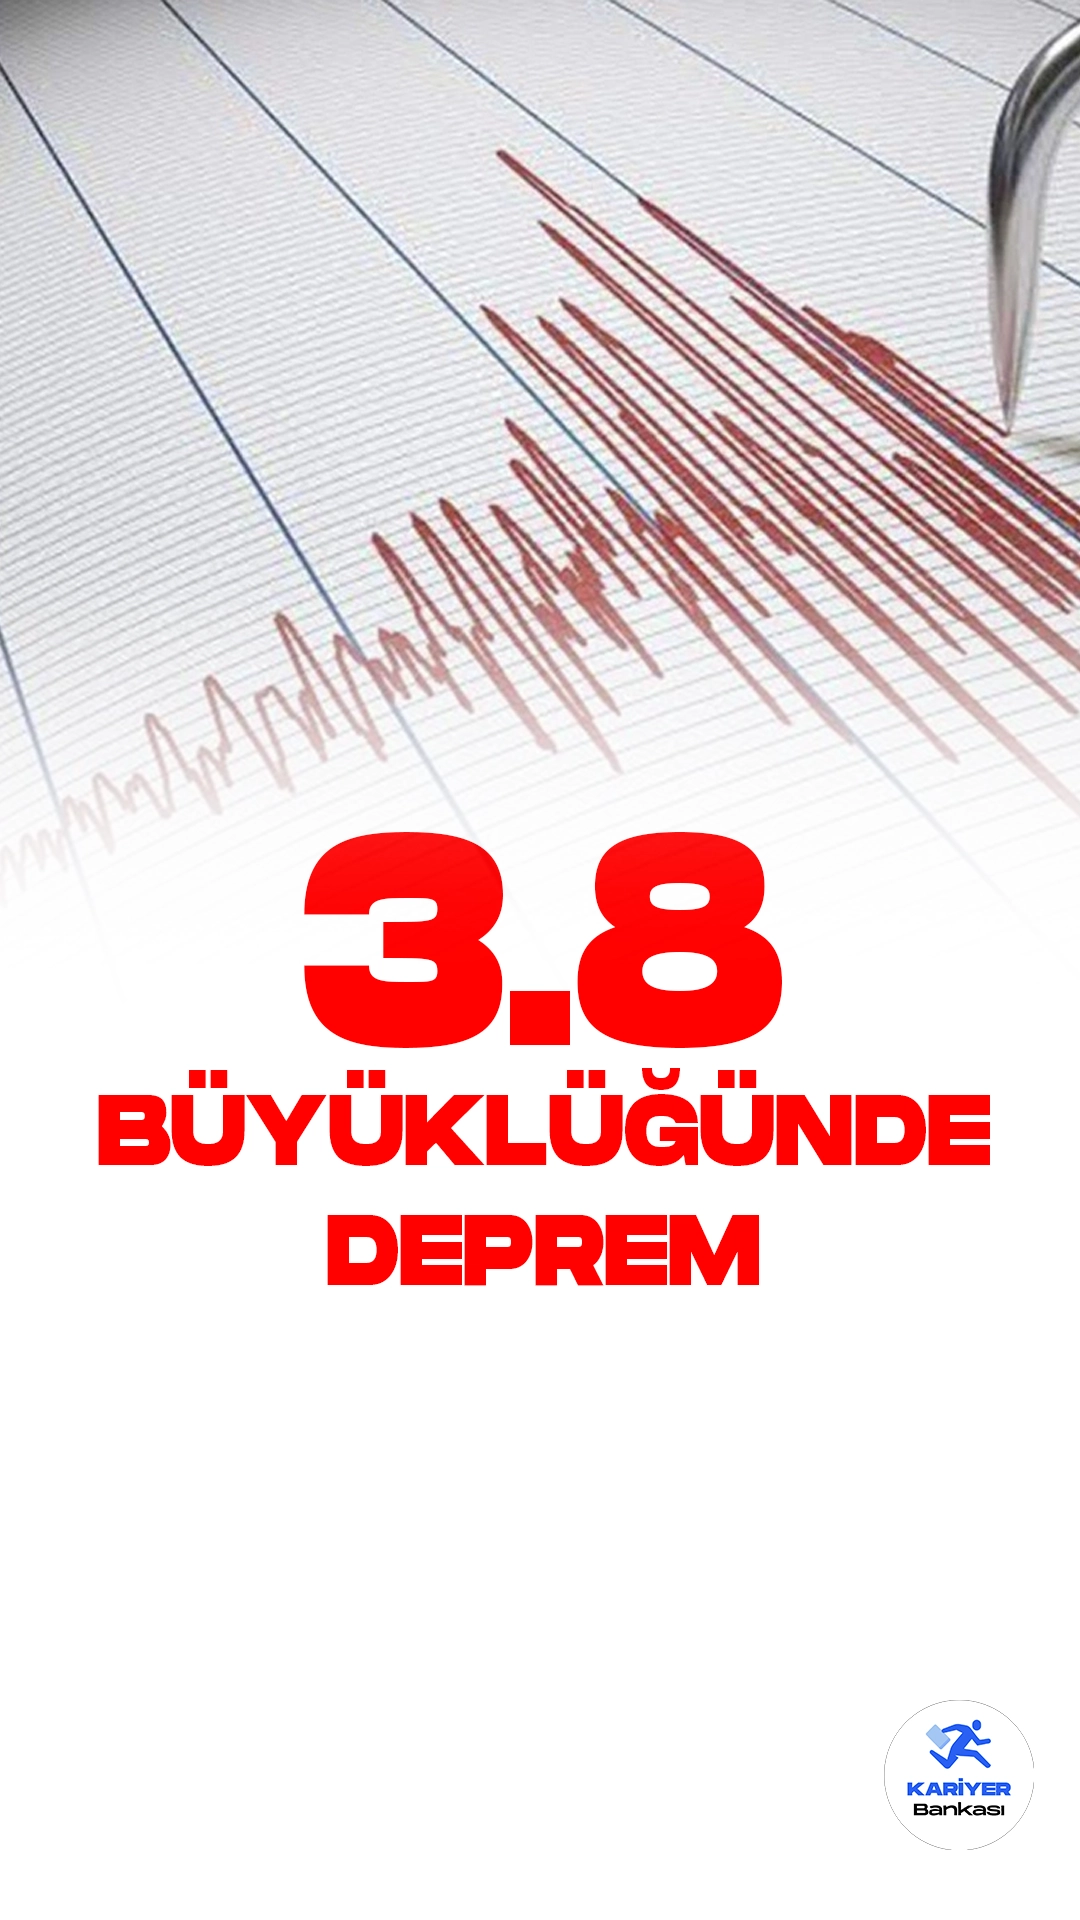 Elazığ'da 3.8 Büyüklüğünde Deprem Oldu. Boğaziçi Üniversitesi Kandilli Rasathanesi ve Deprem Araştırma Enstitüsü resmi sayfasından yayımlanan son dakika bilgisin göre, Elazığ'da 3.8 büyüklüğünde deprem meydana geldiği aktarıldı.